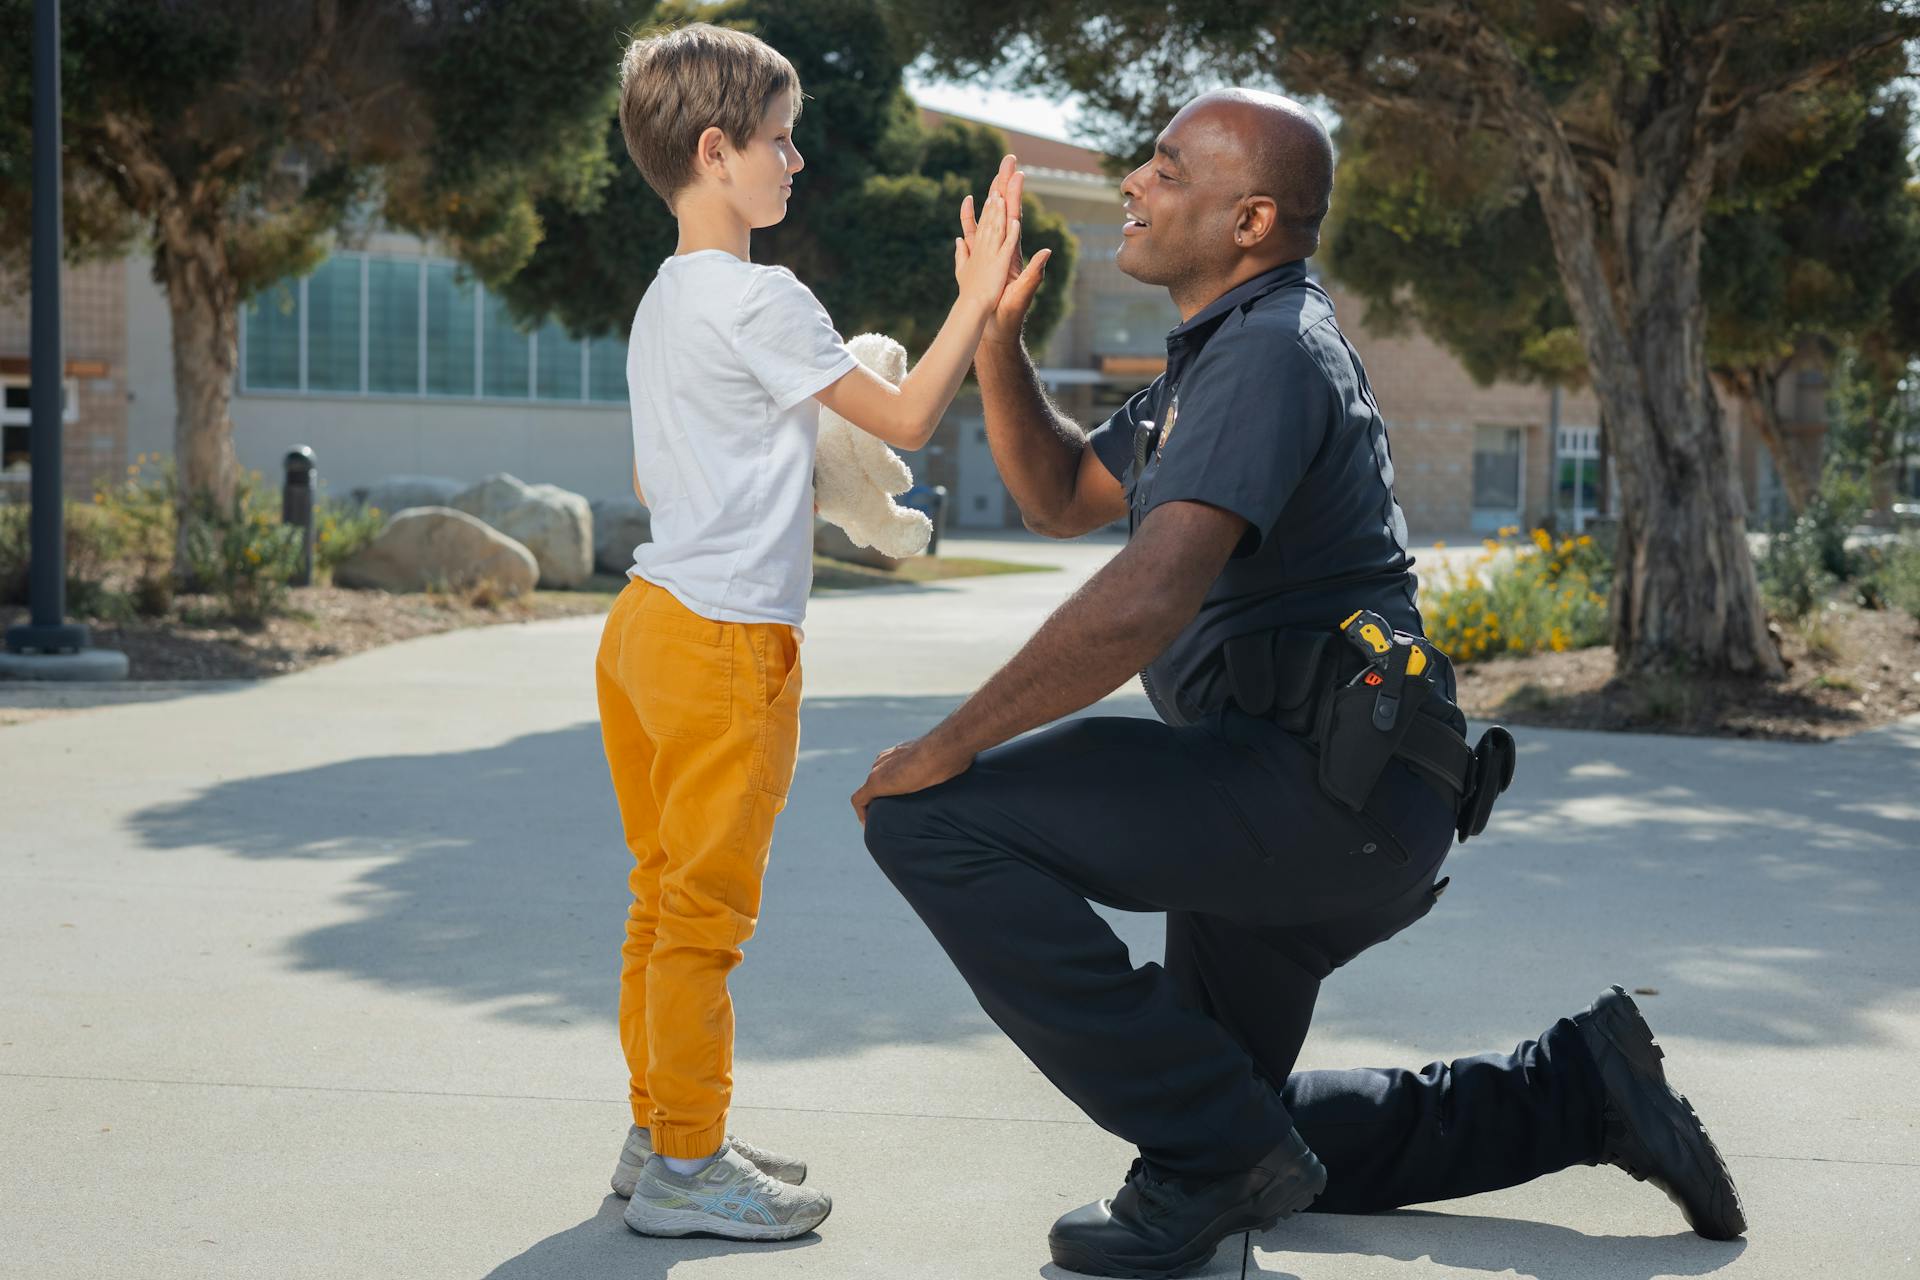 Ein Polizeibeamter, der einem Jungen ein High-Five gibt | Quelle: Pexels